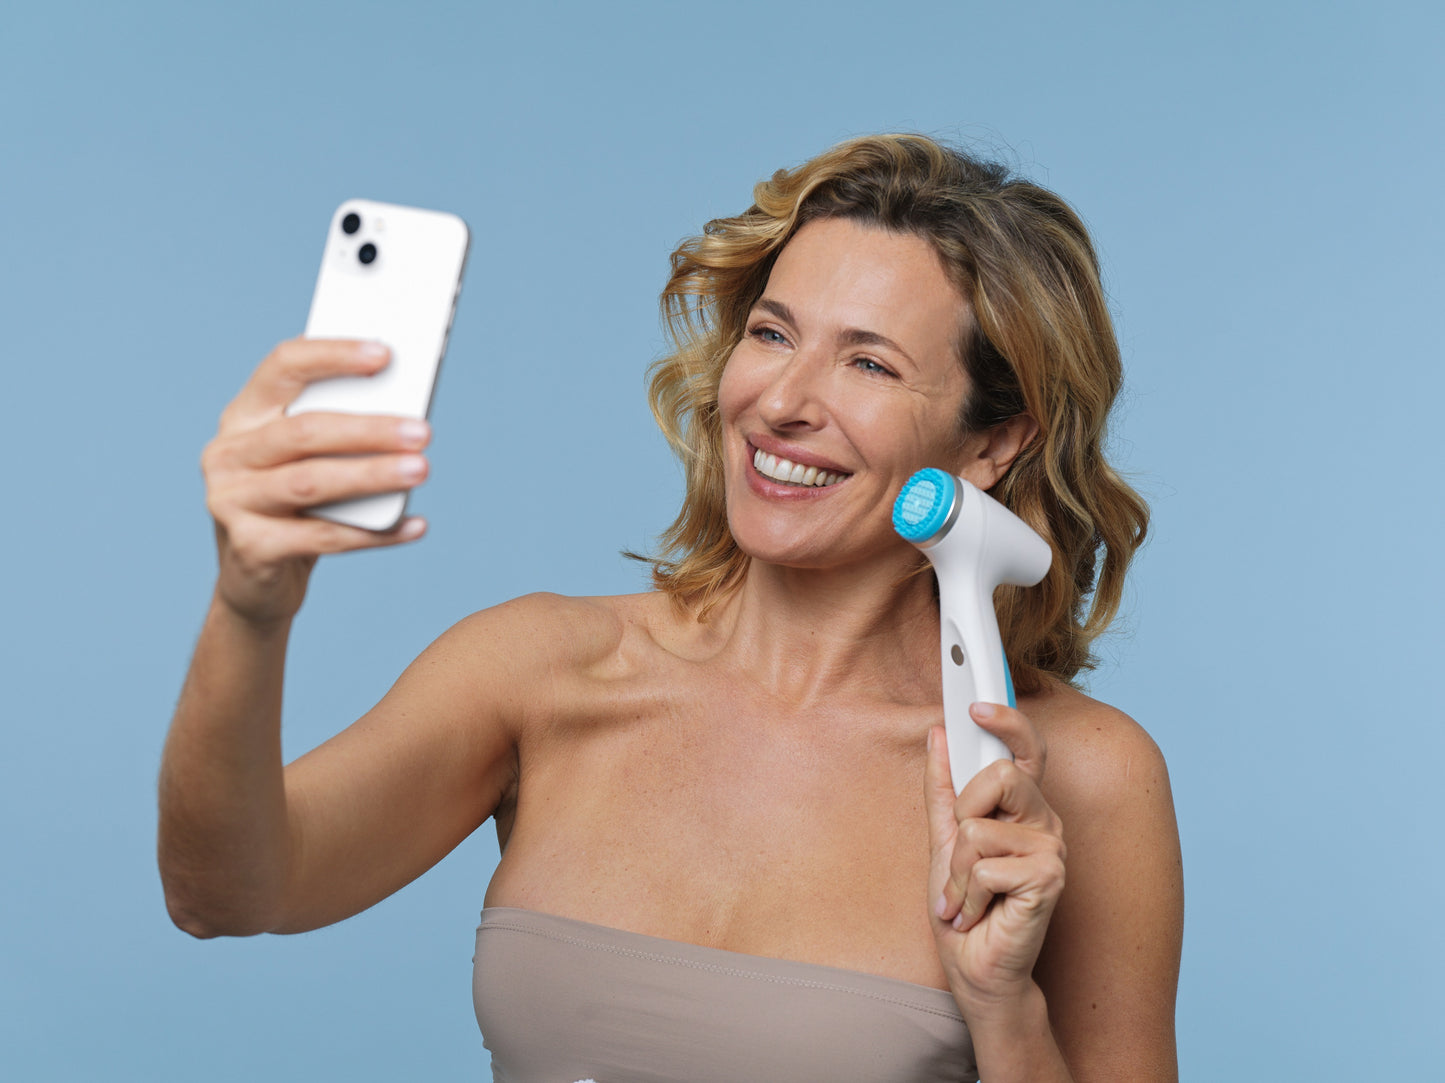 El cliente tiene LumiSpa iO y teléfono móvil - LumiSpa iO puede conectarse a través de Blutetooth con el Nu Skin aplicación Vera en su teléfono móvil para ayudarle a alcanzar sus objetivos de cuidado de la piel con un sistema inteligente. IoT-tecnología inteligente (Internet de las Cosas).